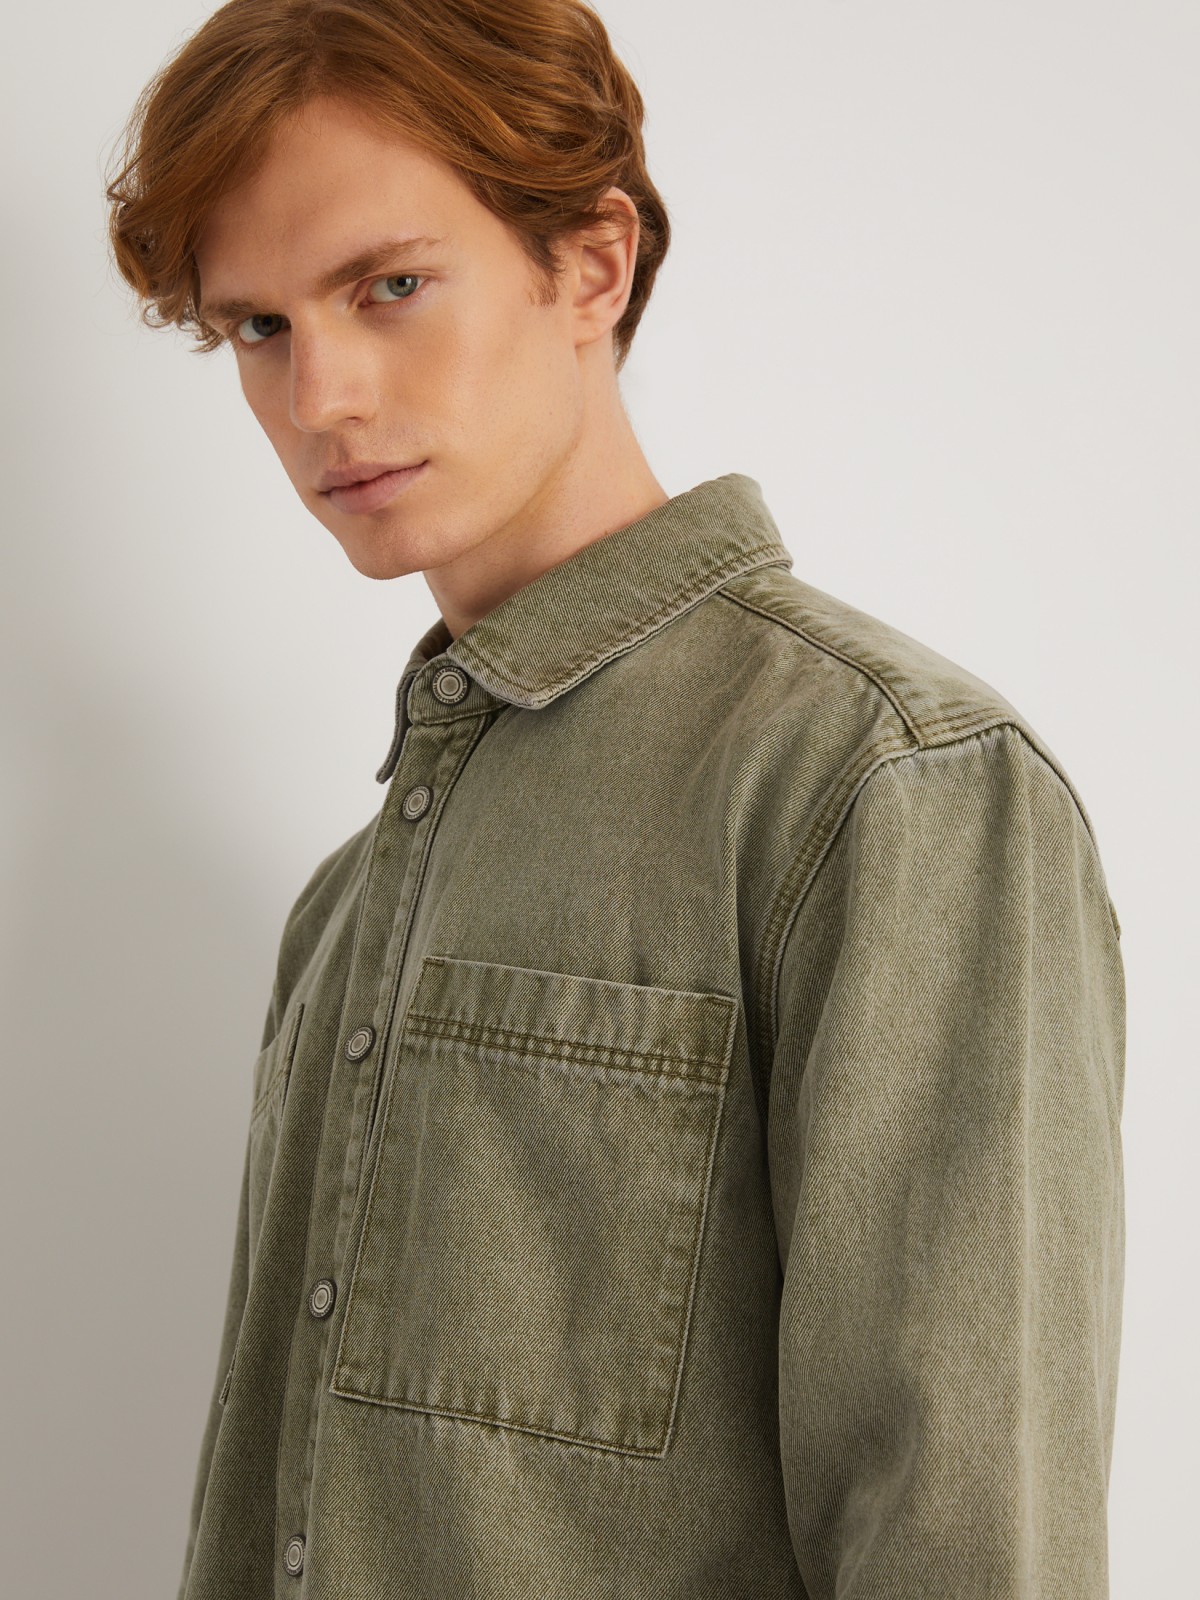 Джинсовая куртка-рубашка на кнопках zolla 014125D4S033, цвет светло-зеленый, размер S - фото 4